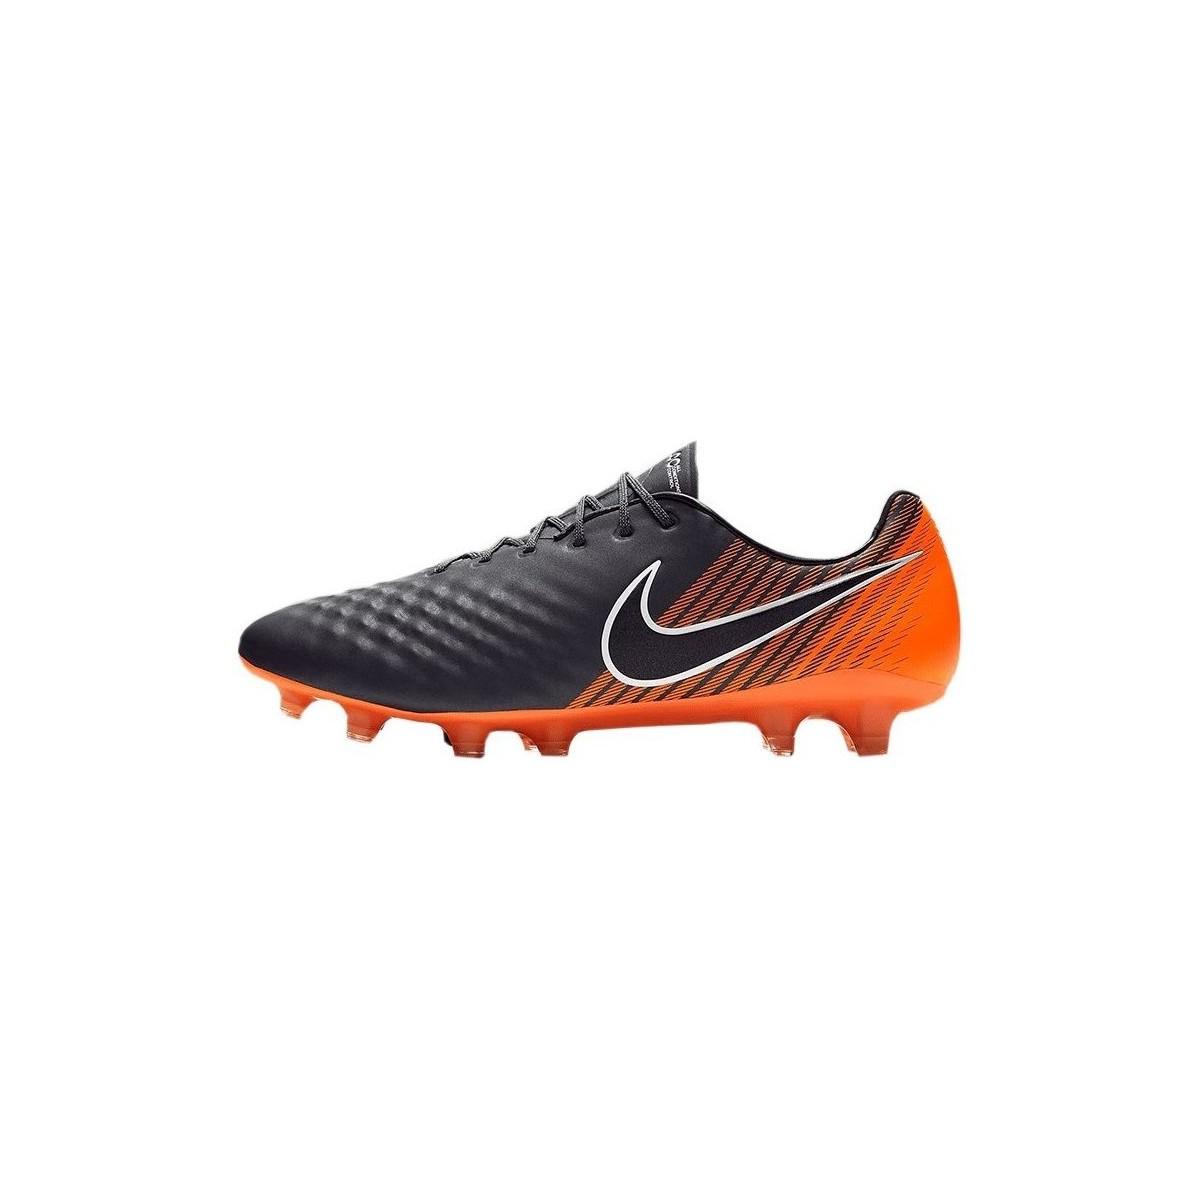 Nike Magista Obra II FG Soccer Cleats (Black) Nike 844595